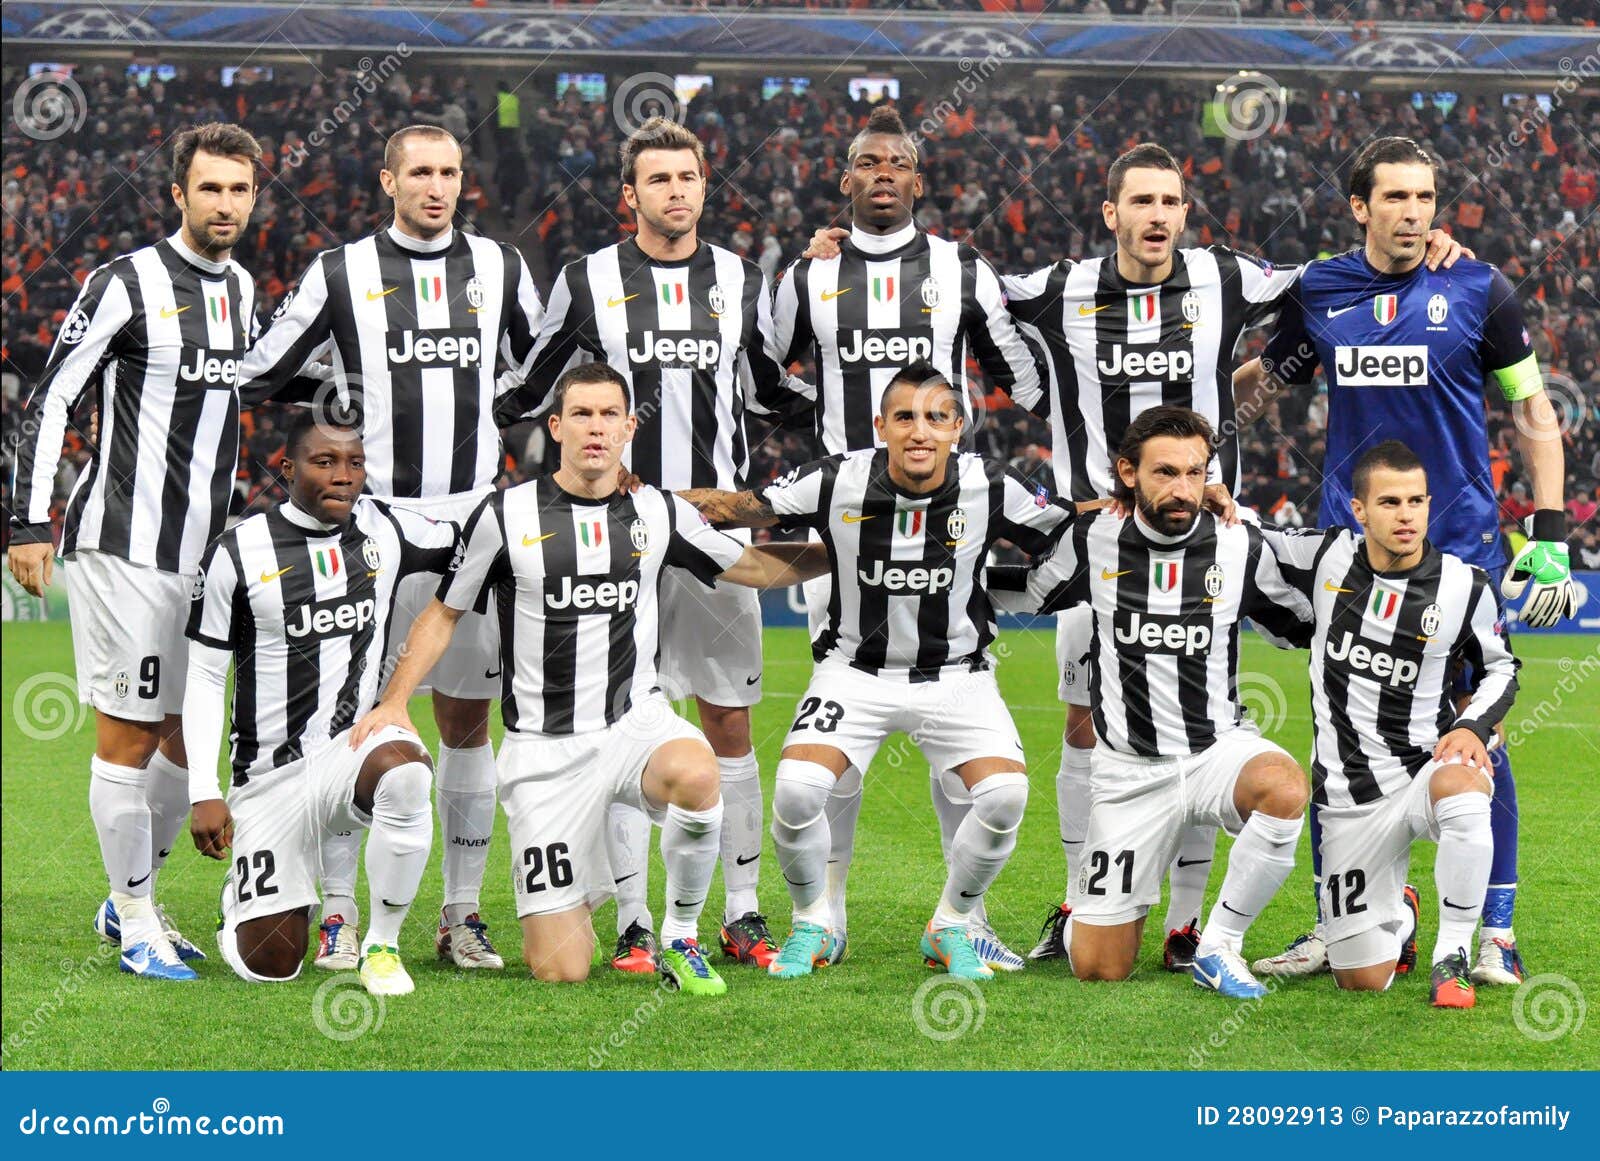 Football Juventus , Photos of Juventus , Juventus players , Juventus images